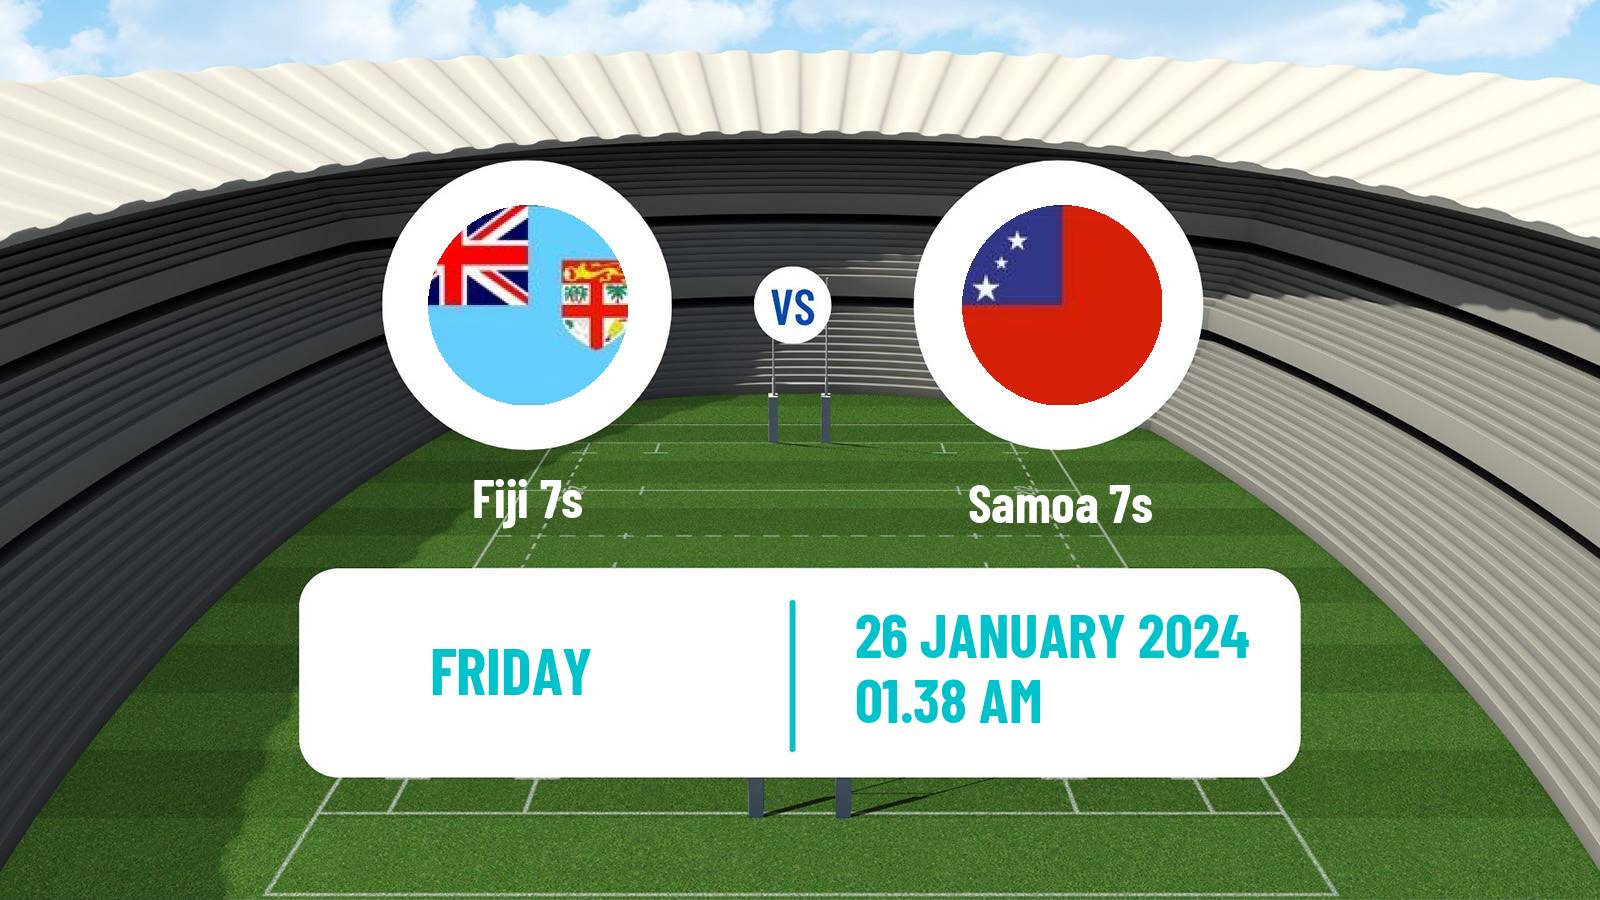 Rugby union Sevens World Series - Australia Fiji 7s - Samoa 7s